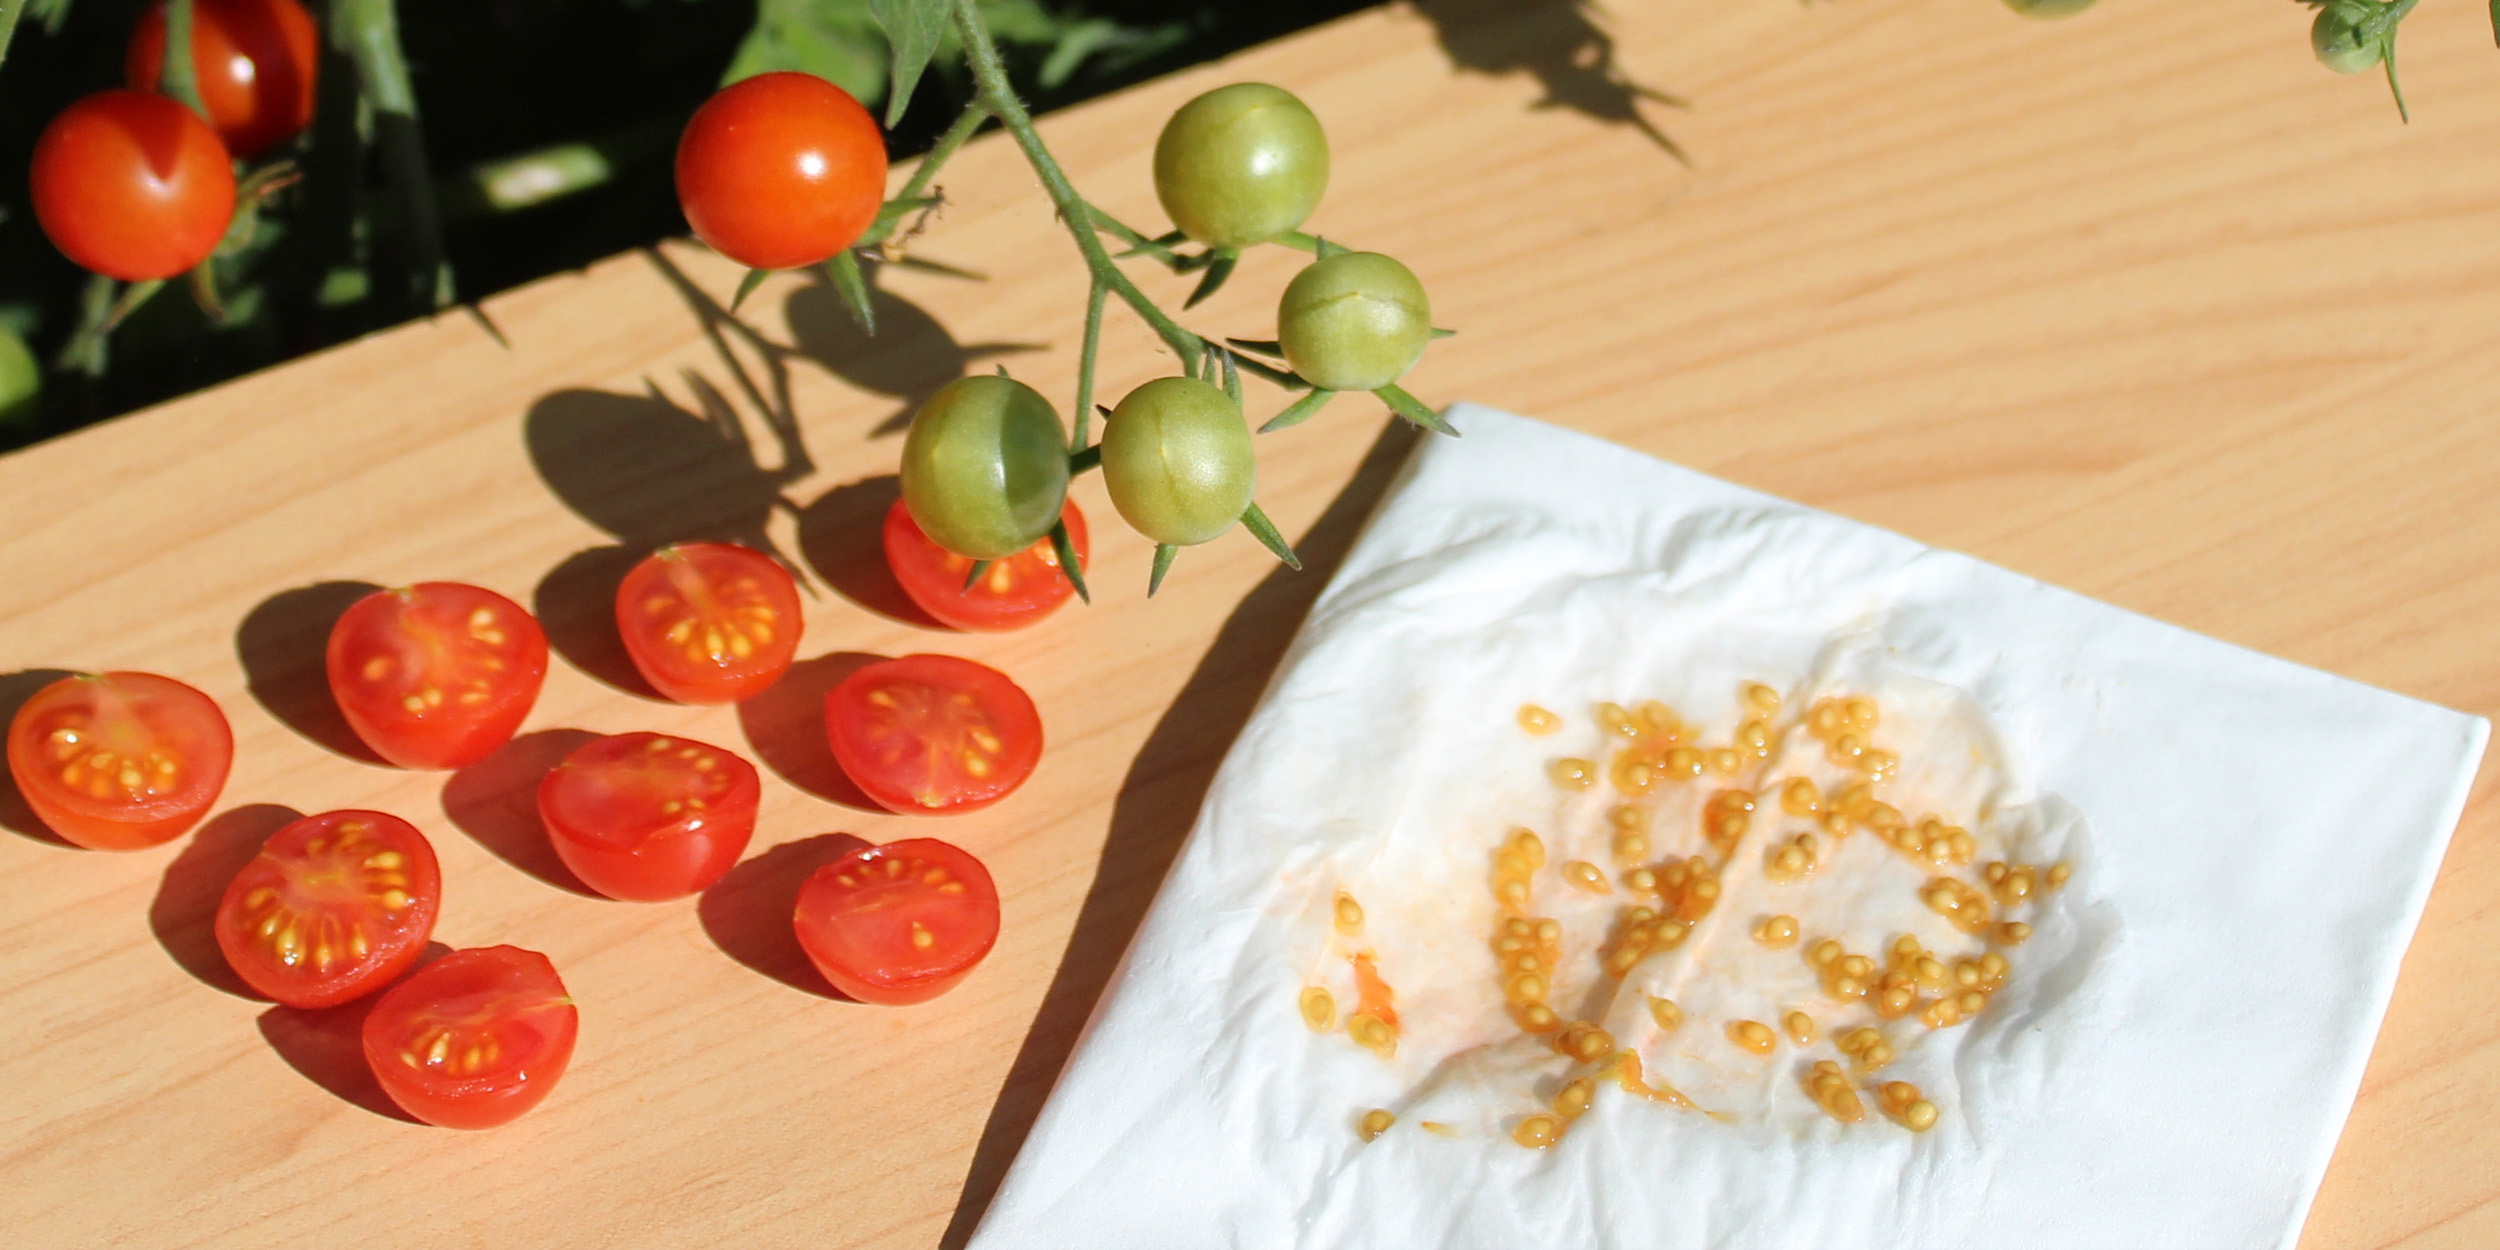 Как сохранить семена помидоров для посадки?